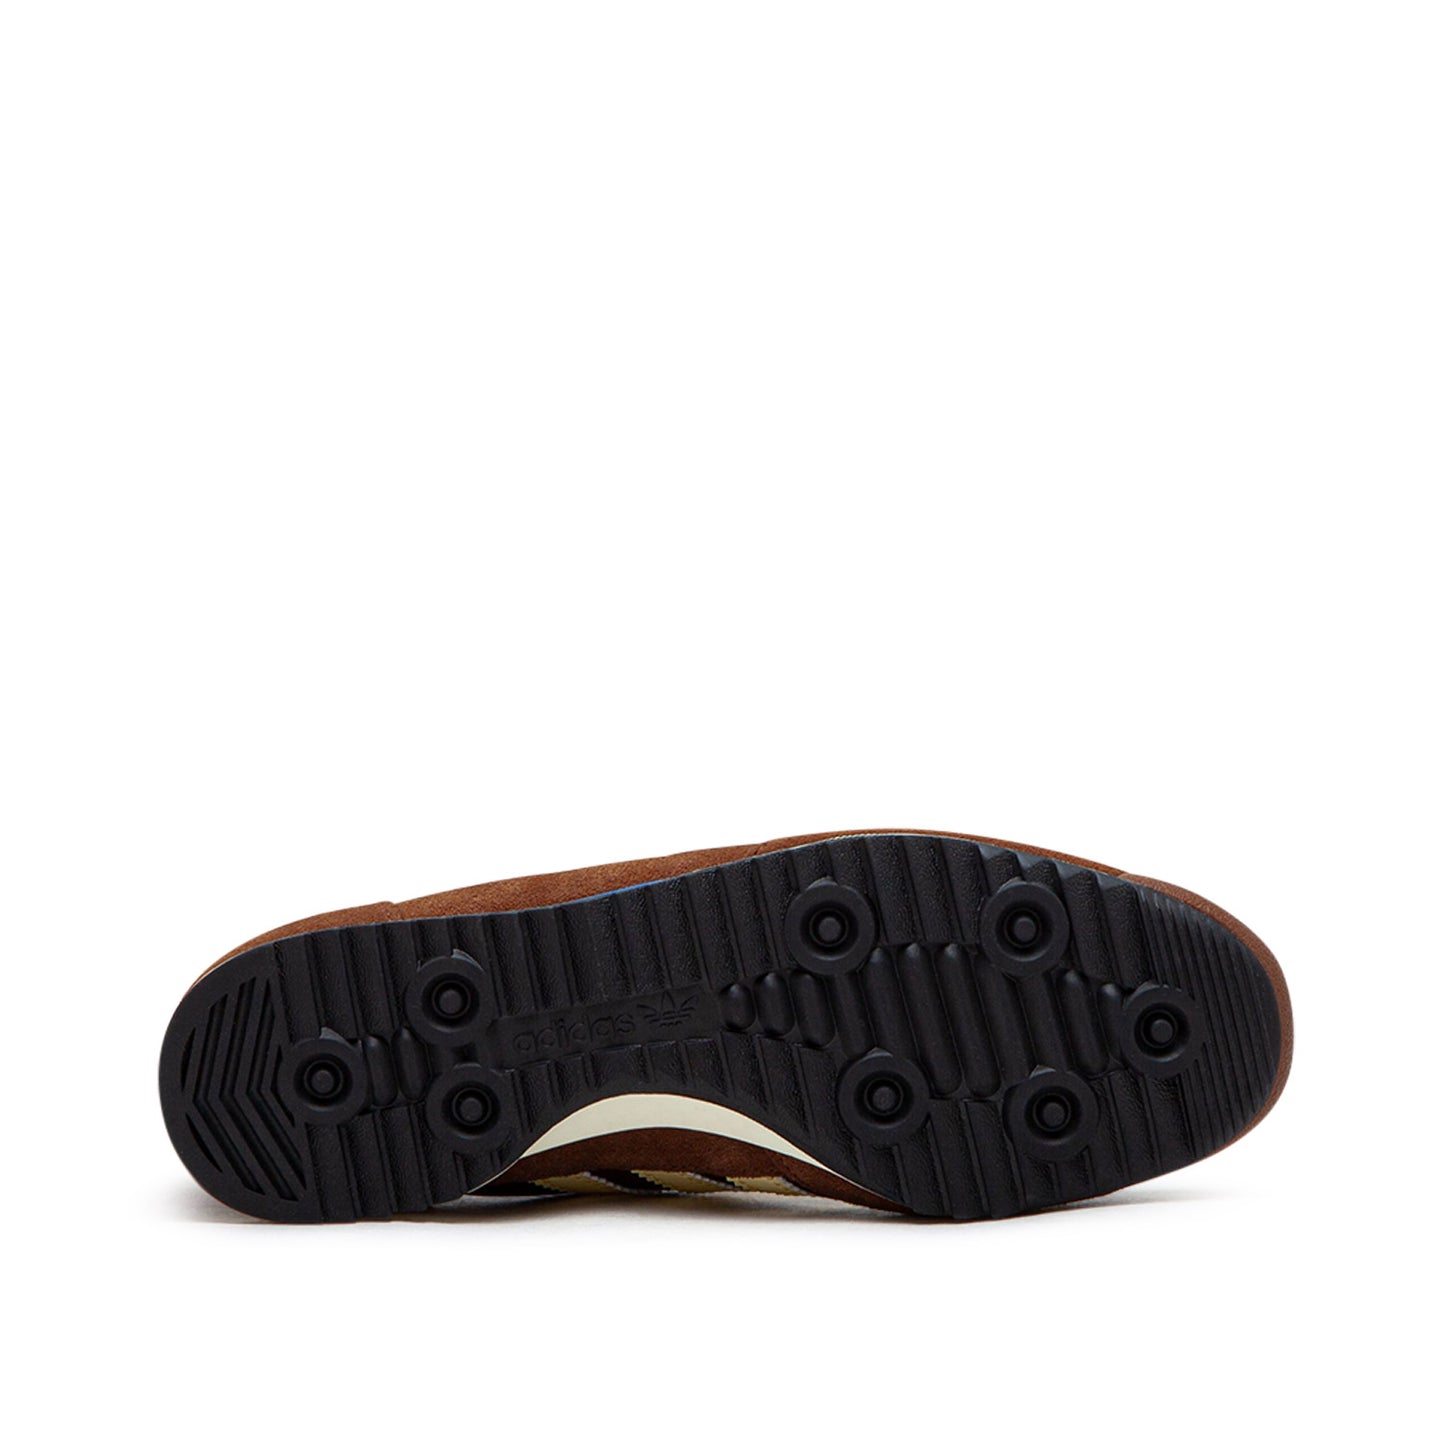 adidas faux WMNS SL 72 (Braun)  - Cheap Sneakersbe Jordan Outlet